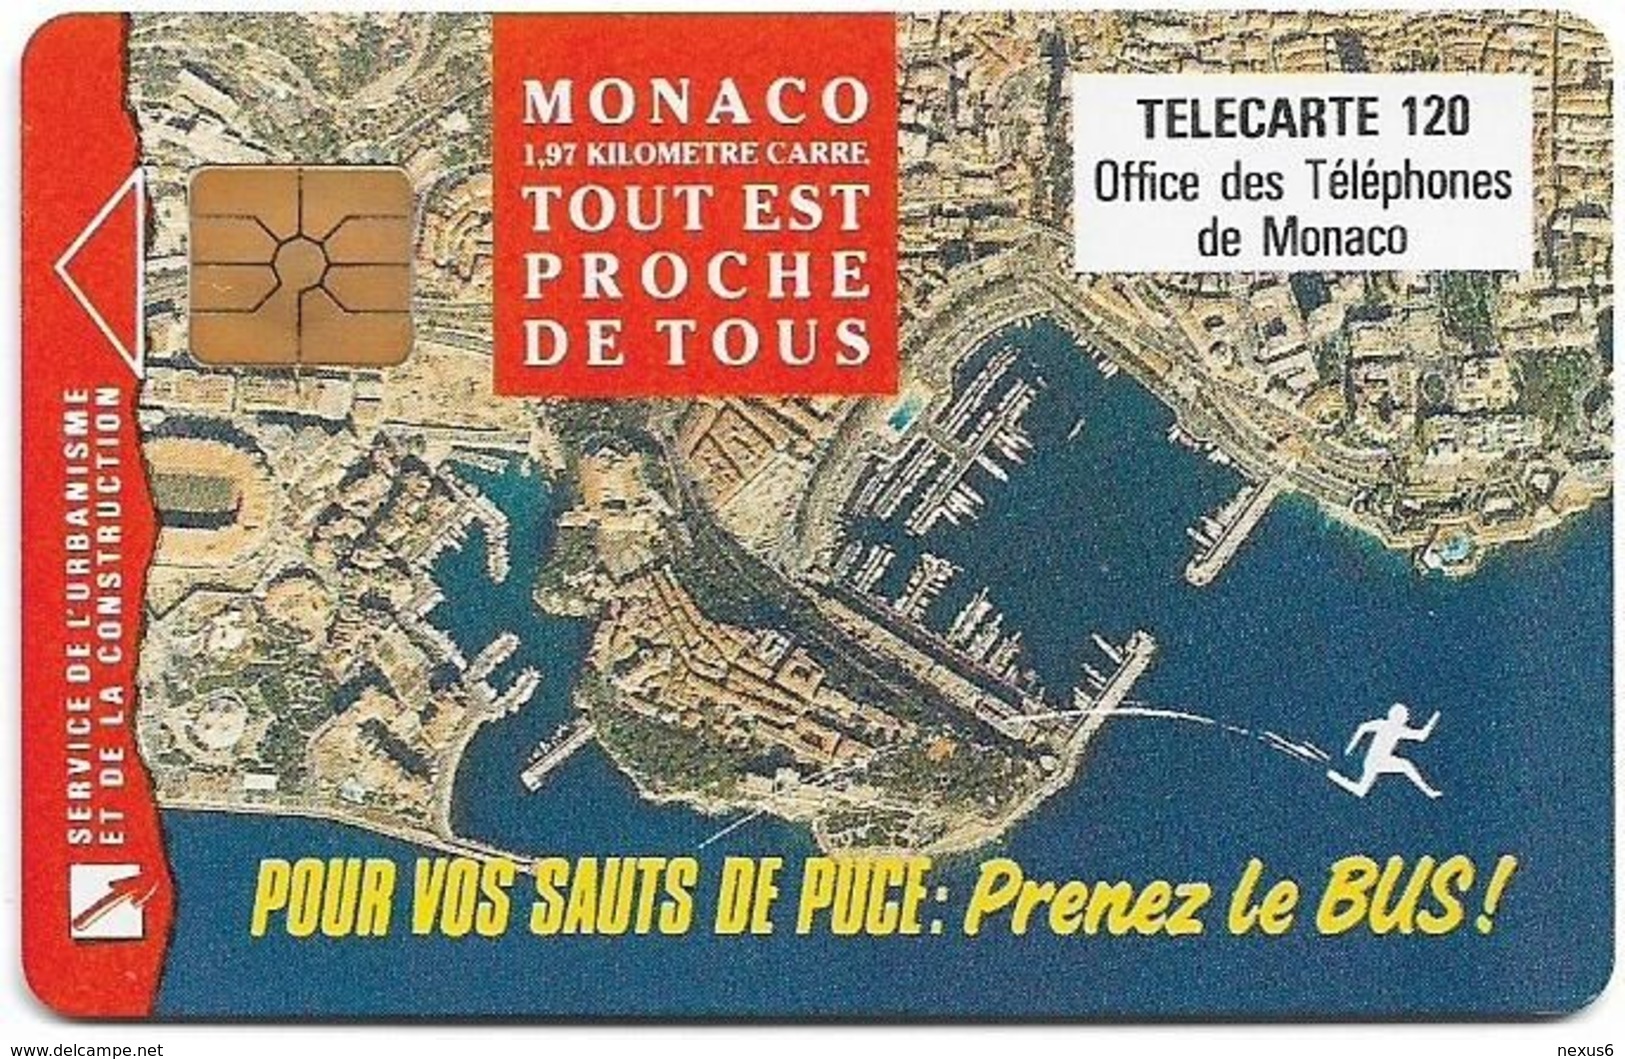 Monaco - MF49 - Prenez Le Bus - Cn. B2C0Q0004, Gem1A Symm. Black, NO Transp. Moreno, 01.1993, 120Units, 100.000ex, Used - Monaco